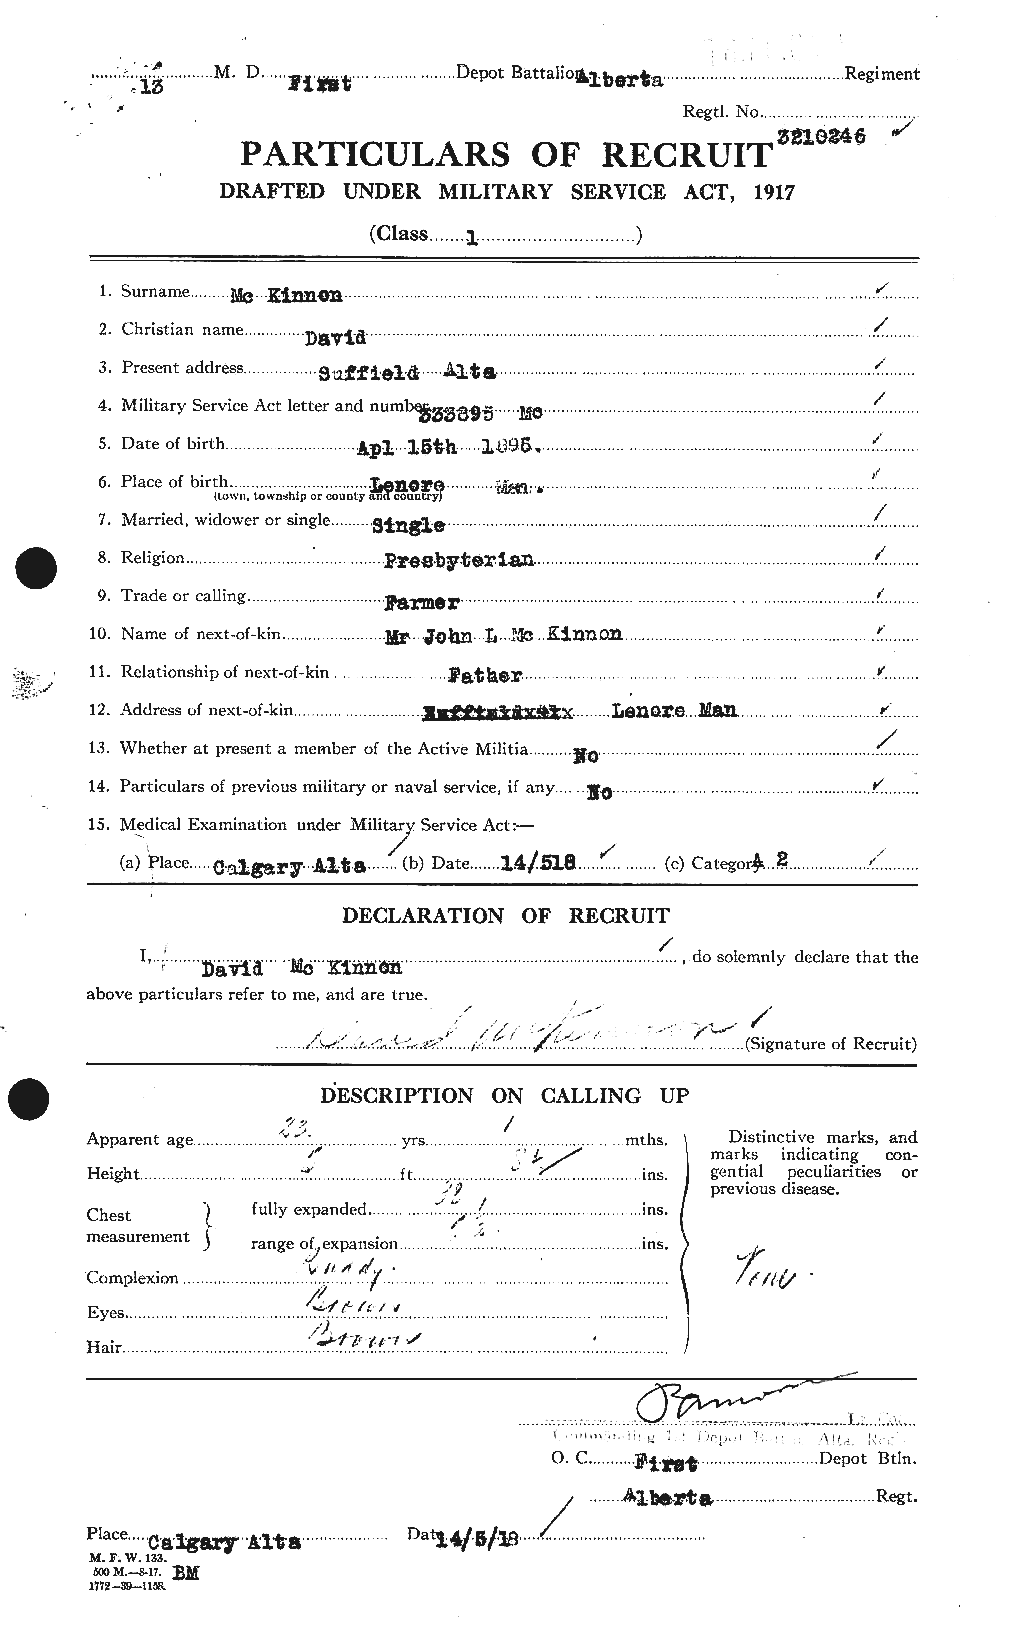 Dossiers du Personnel de la Première Guerre mondiale - CEC 531345a